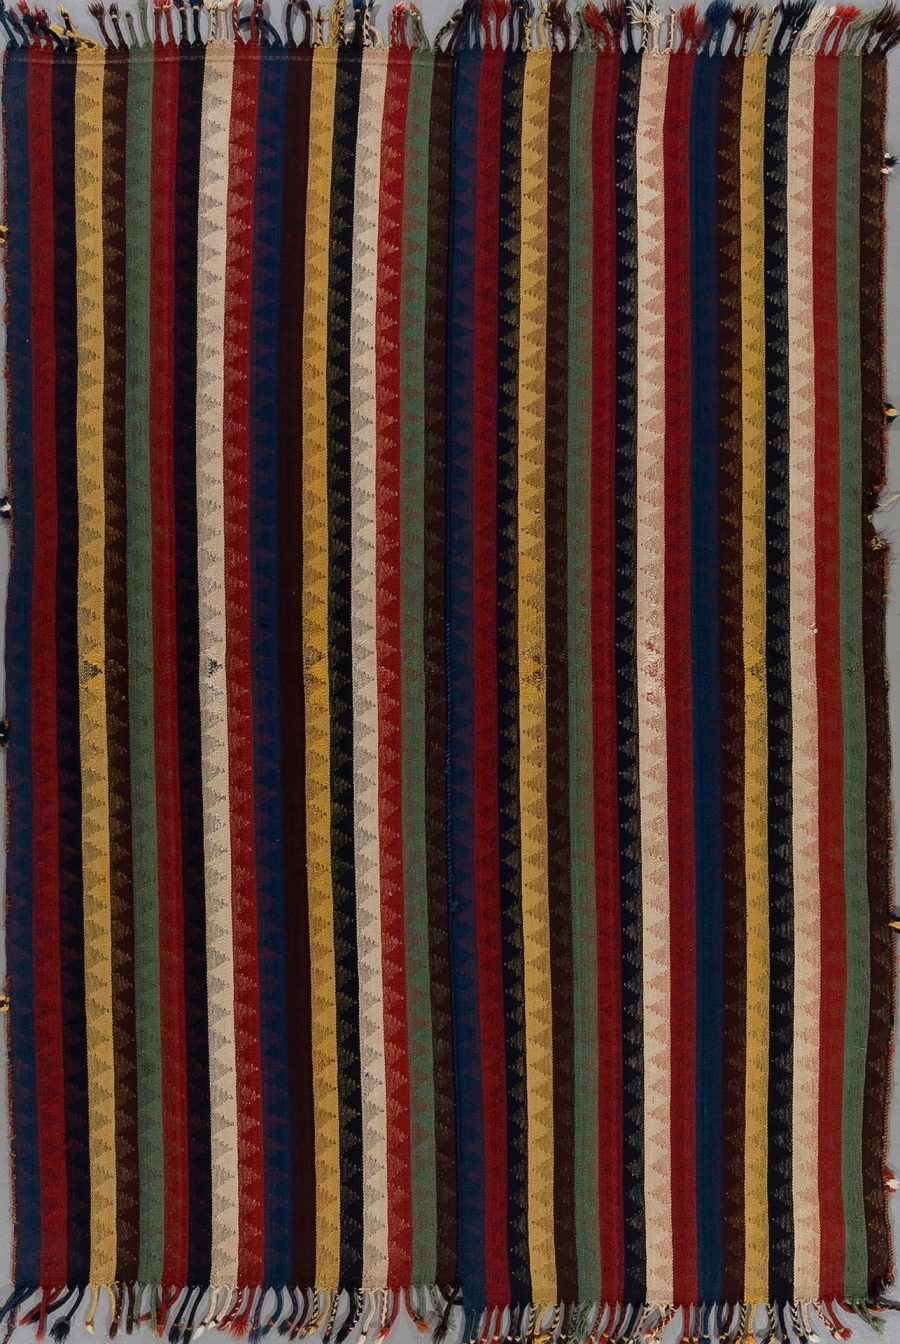 Handgewebter Teppich mit vertikalen Streifen in verschiedenen Farben wie Rot, Grün, Blau, Gelb und Beige, teilweise mit Muster, Fransen an den Enden.